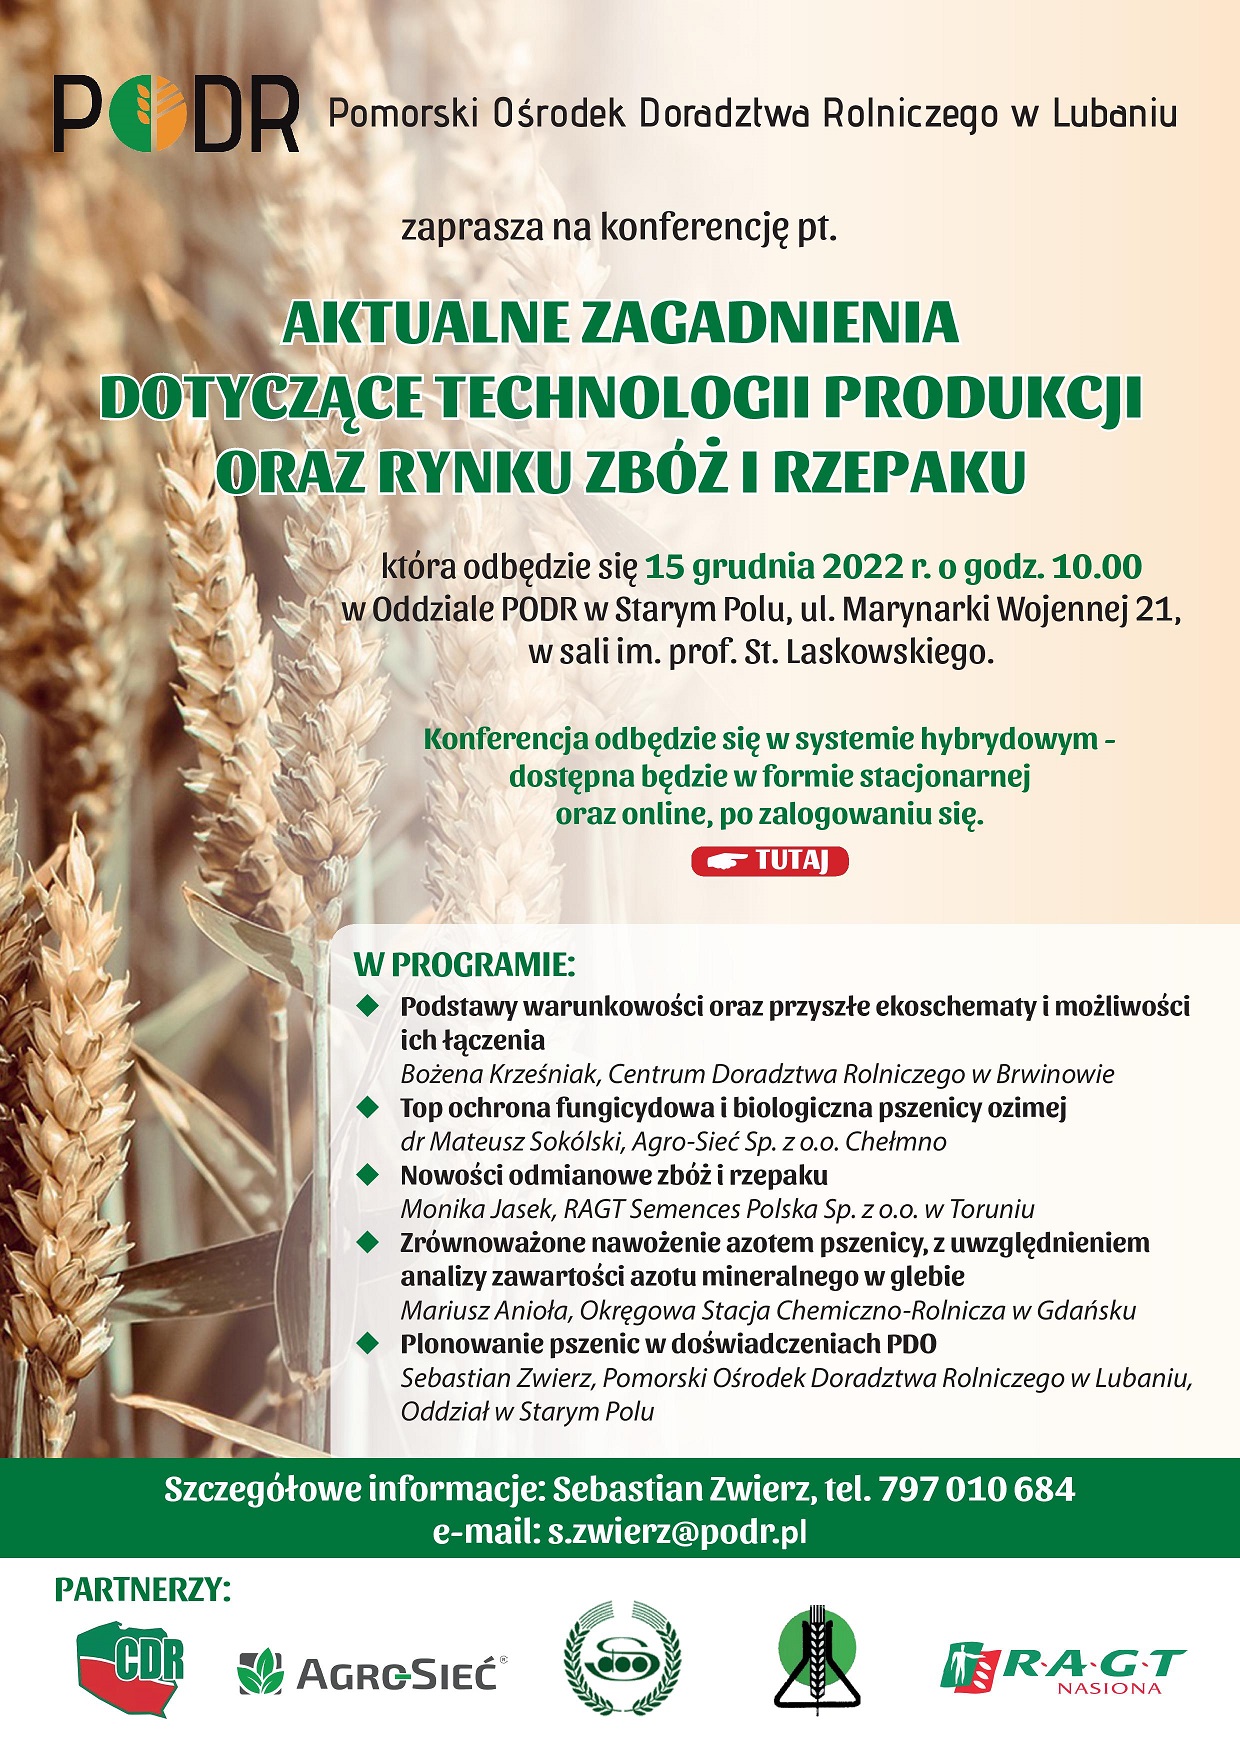 Plakat informujący o konferencji dla rolników